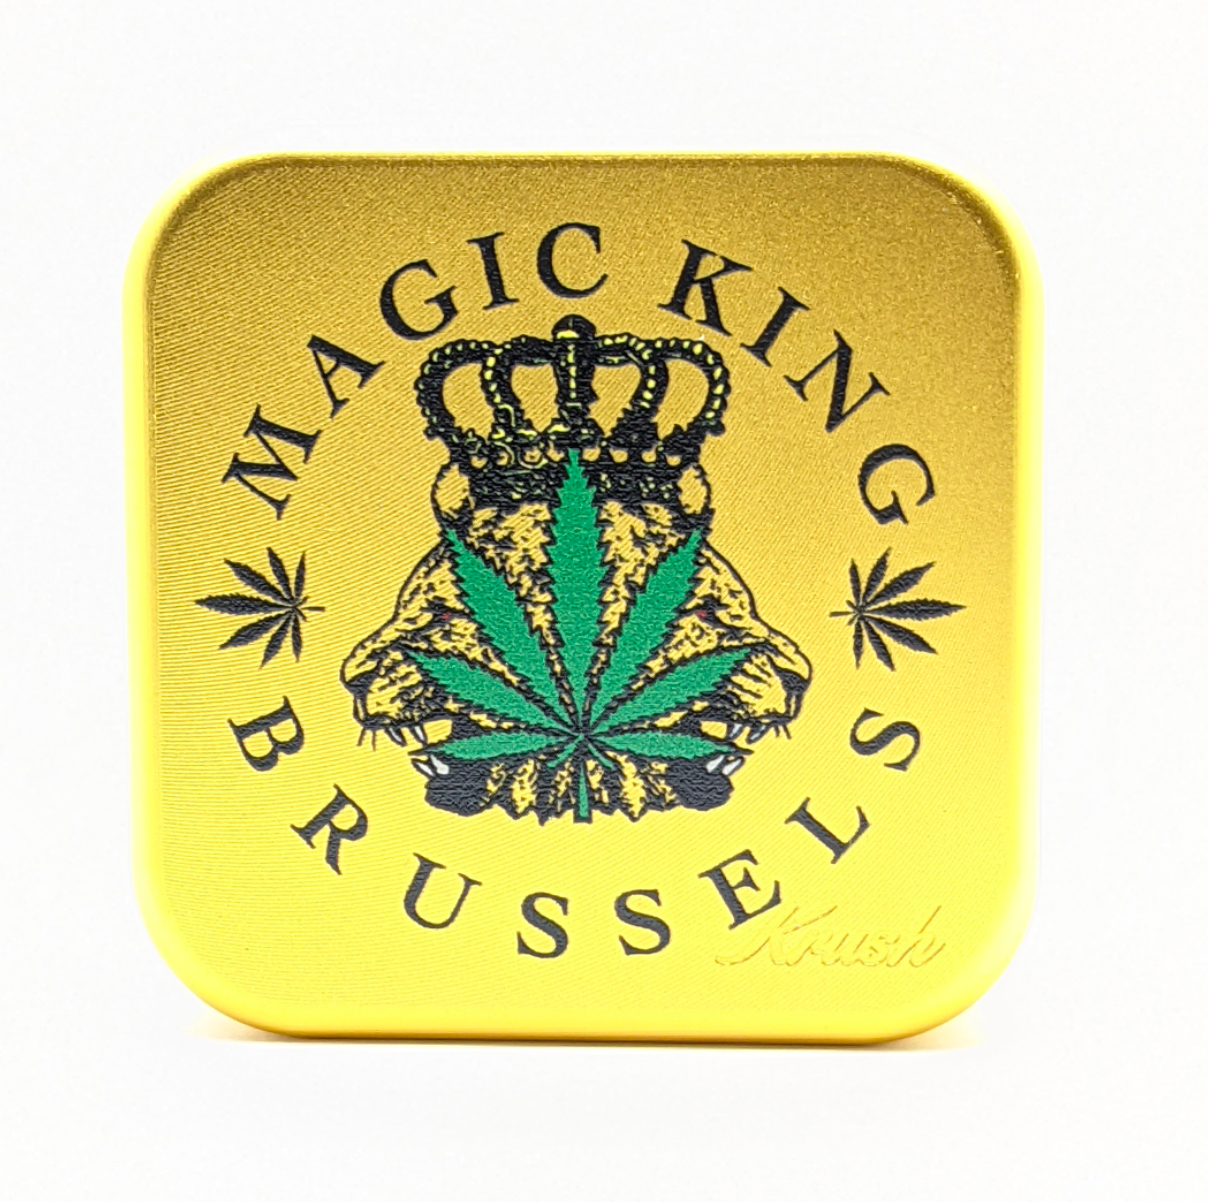 Magic King x Krush - Grinder 2.0 "Gold"